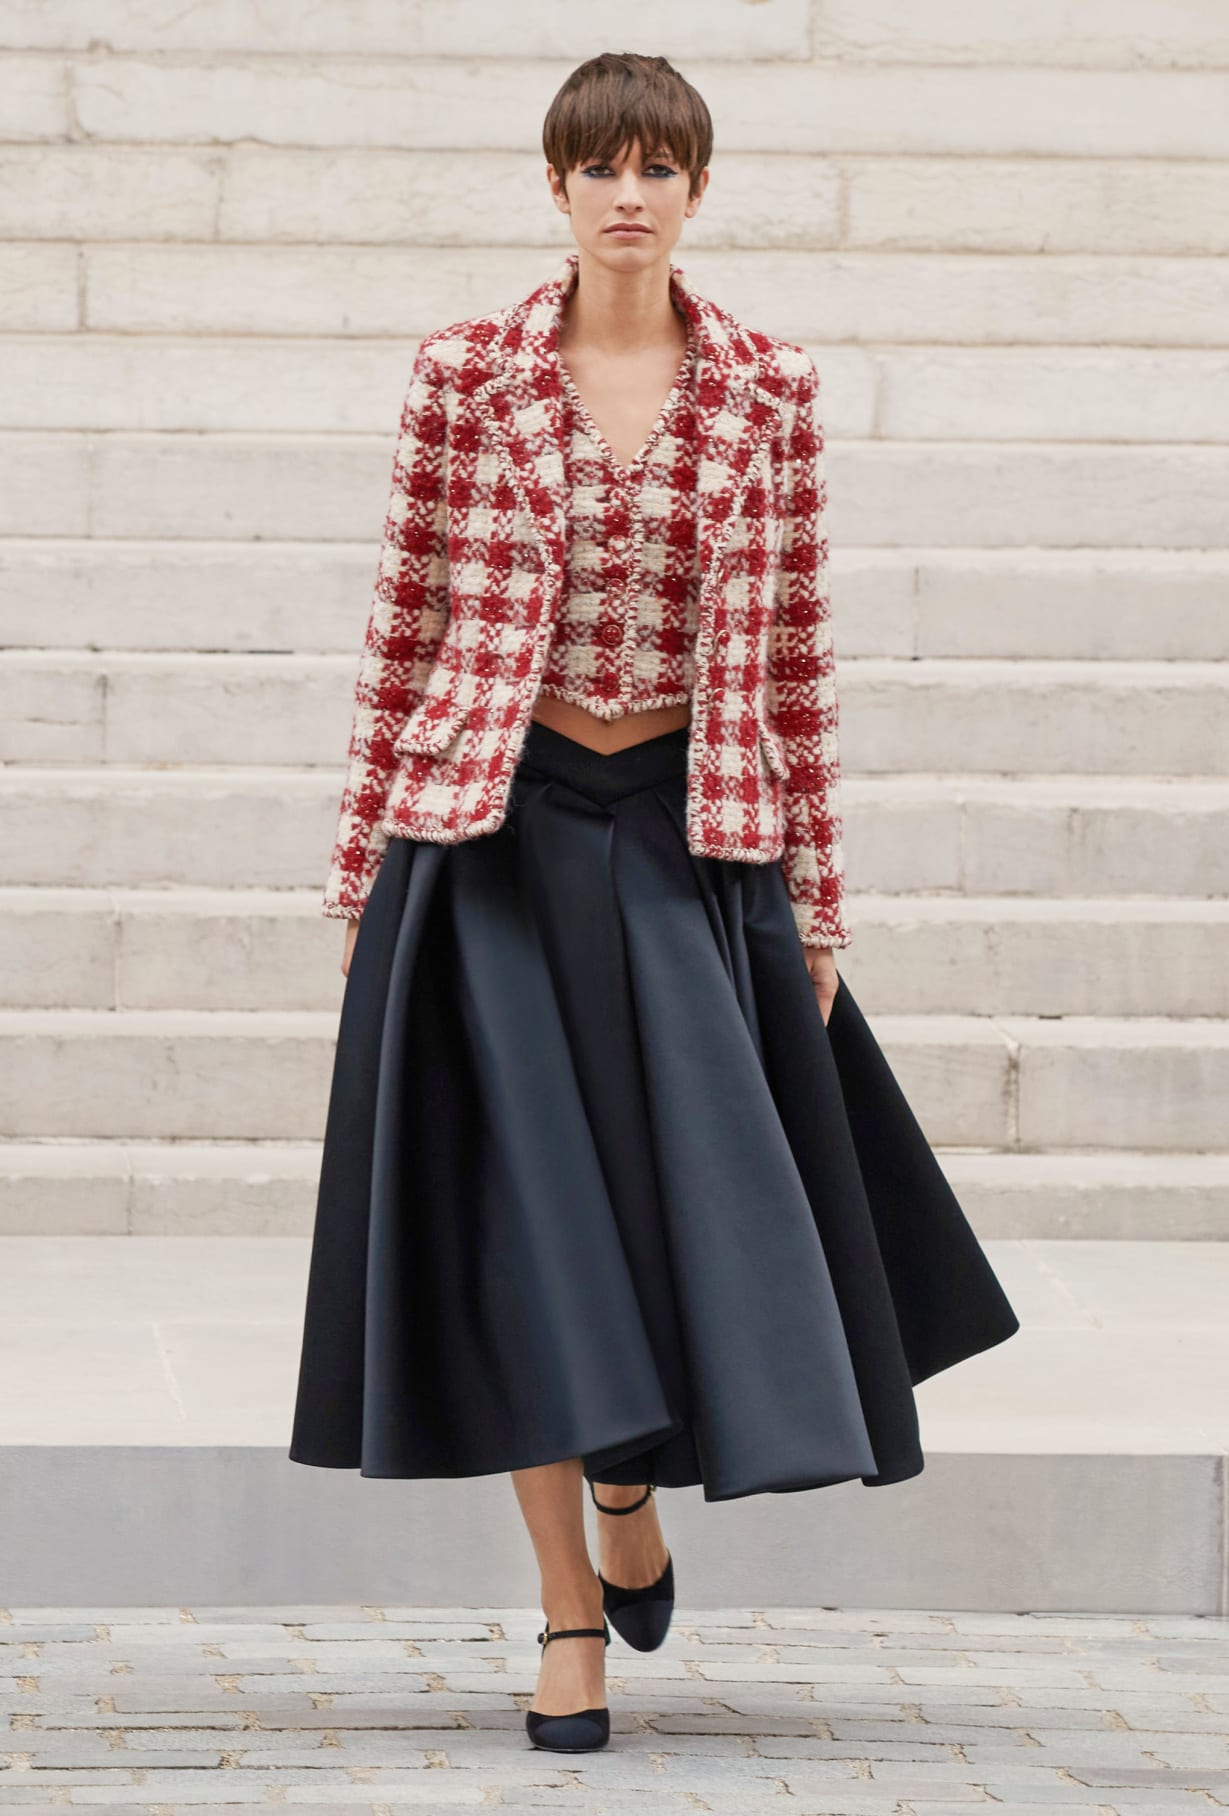 Chanel Haute Couture 2021: Sự tối giản của sàn diễn để tôn vinh trang phục  - Ảnh 7